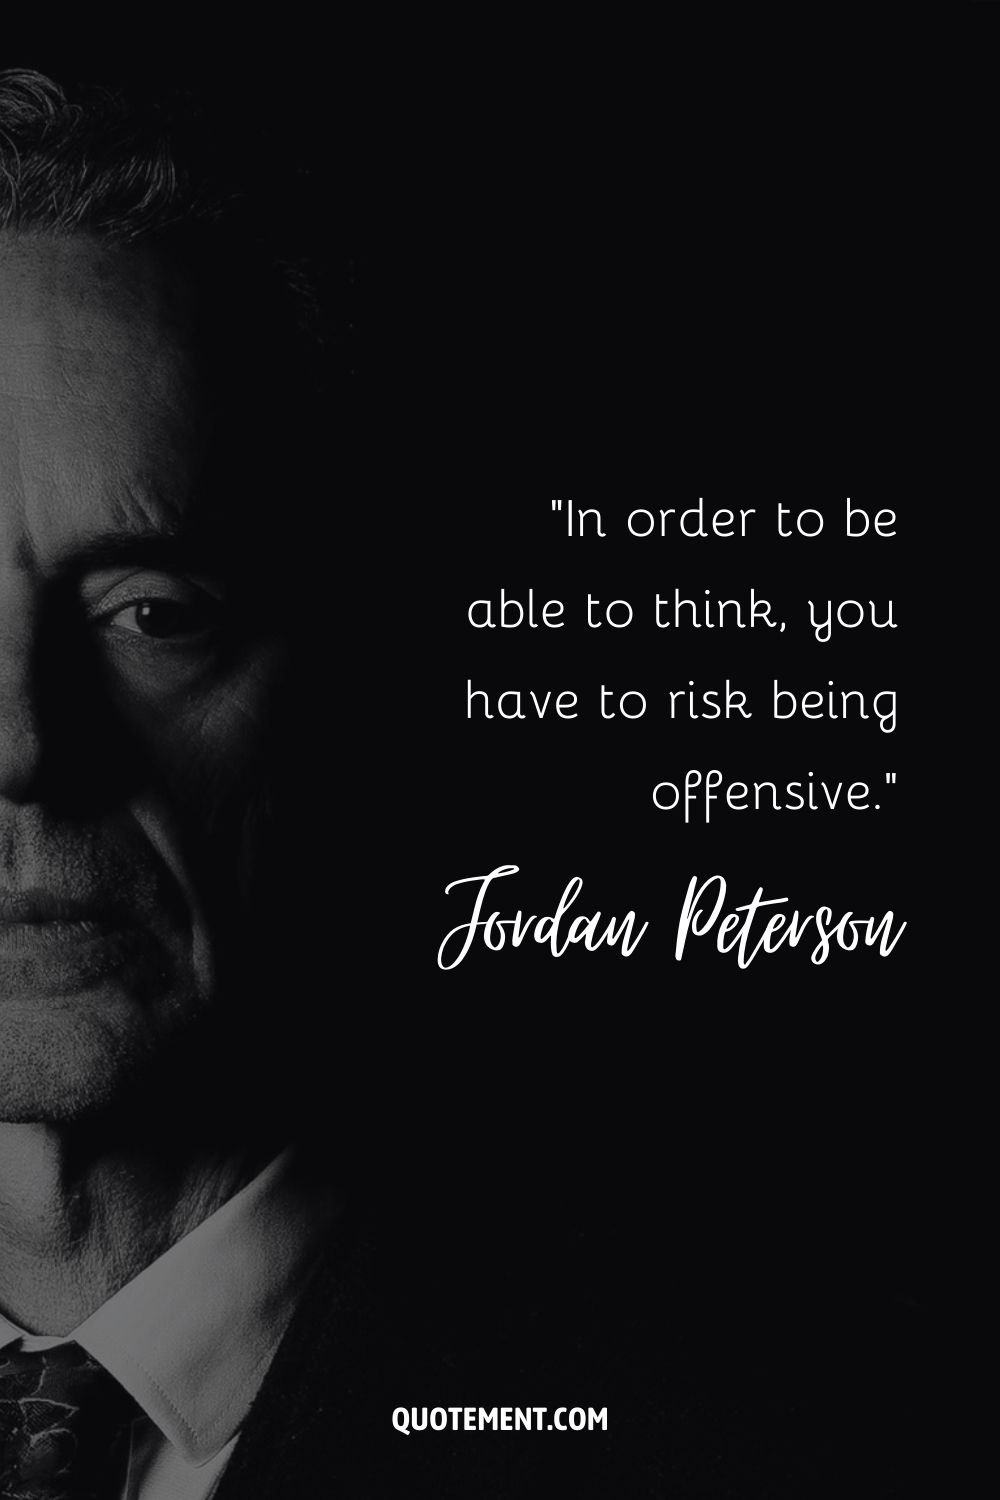 Cita de Jordan Peterson sobre el riesgo.